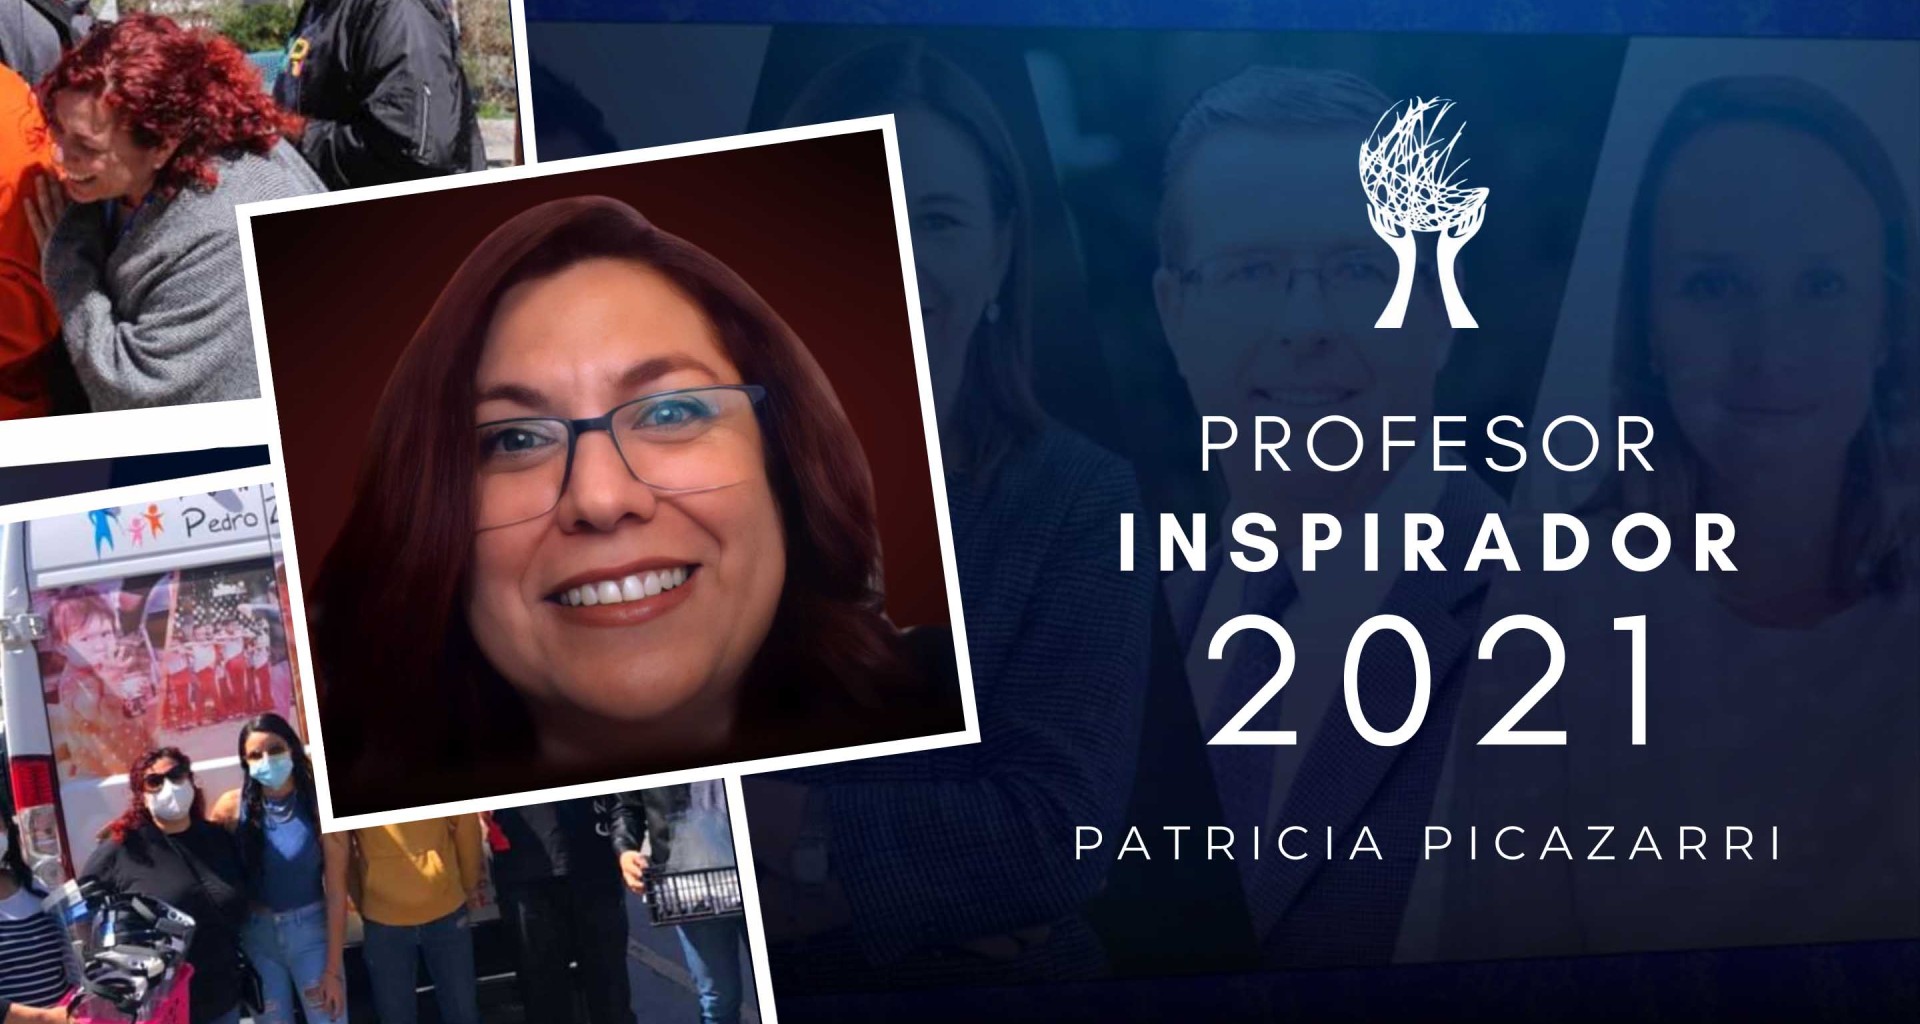 Conoce un poco más a Patricia Picazarri, una de las dos ganadoras del premio Profesor Inspirador 2021